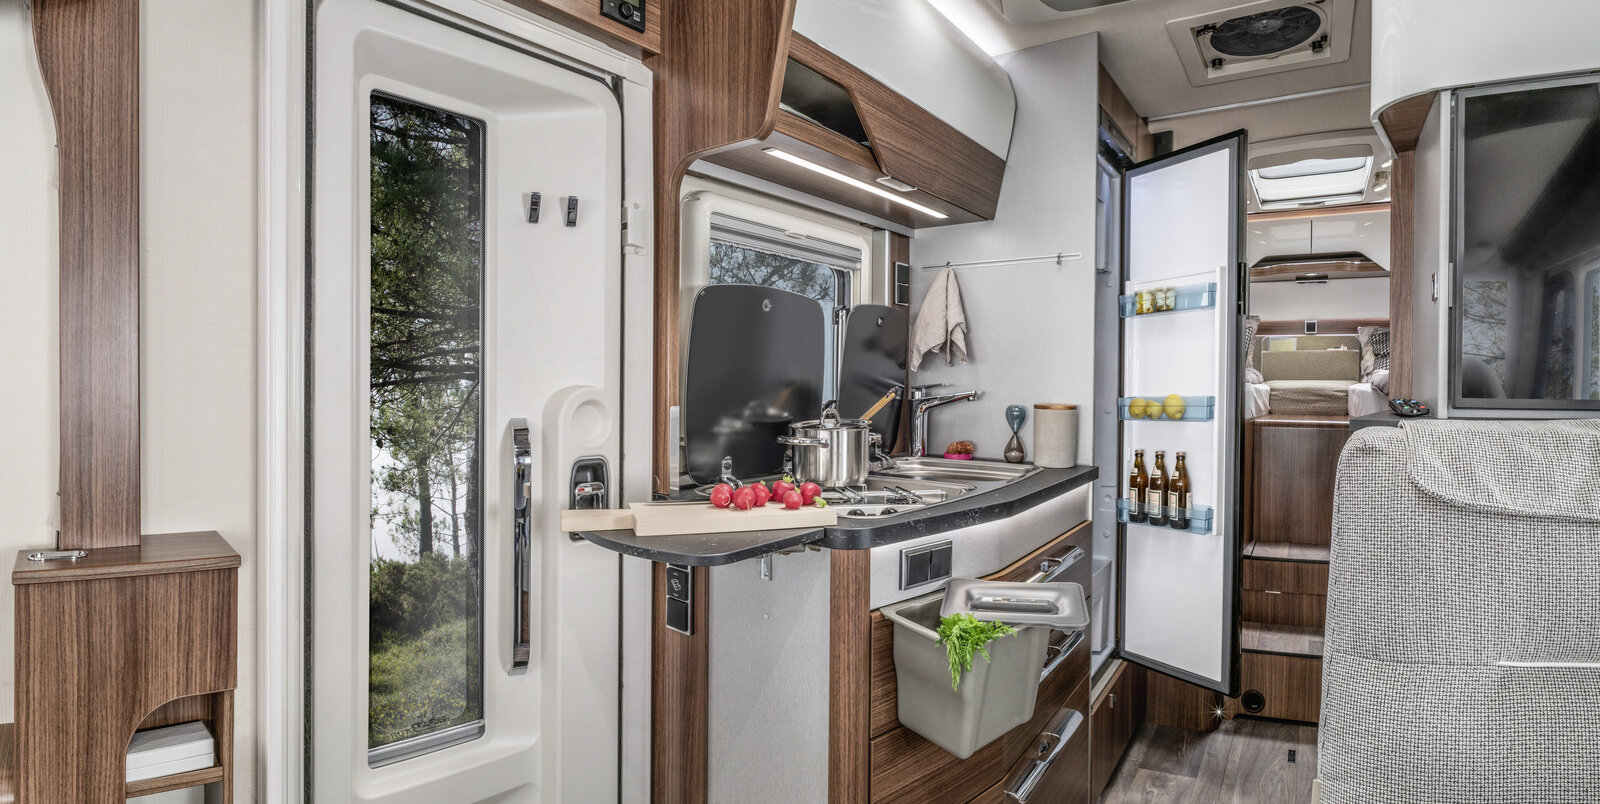 Cucina accanto alla porta d’ingresso, estensione del piano di lavoro della cucina, pattumiera attaccata al cassetto estraibile, frigorifero aperto nell’HYMER B-MC